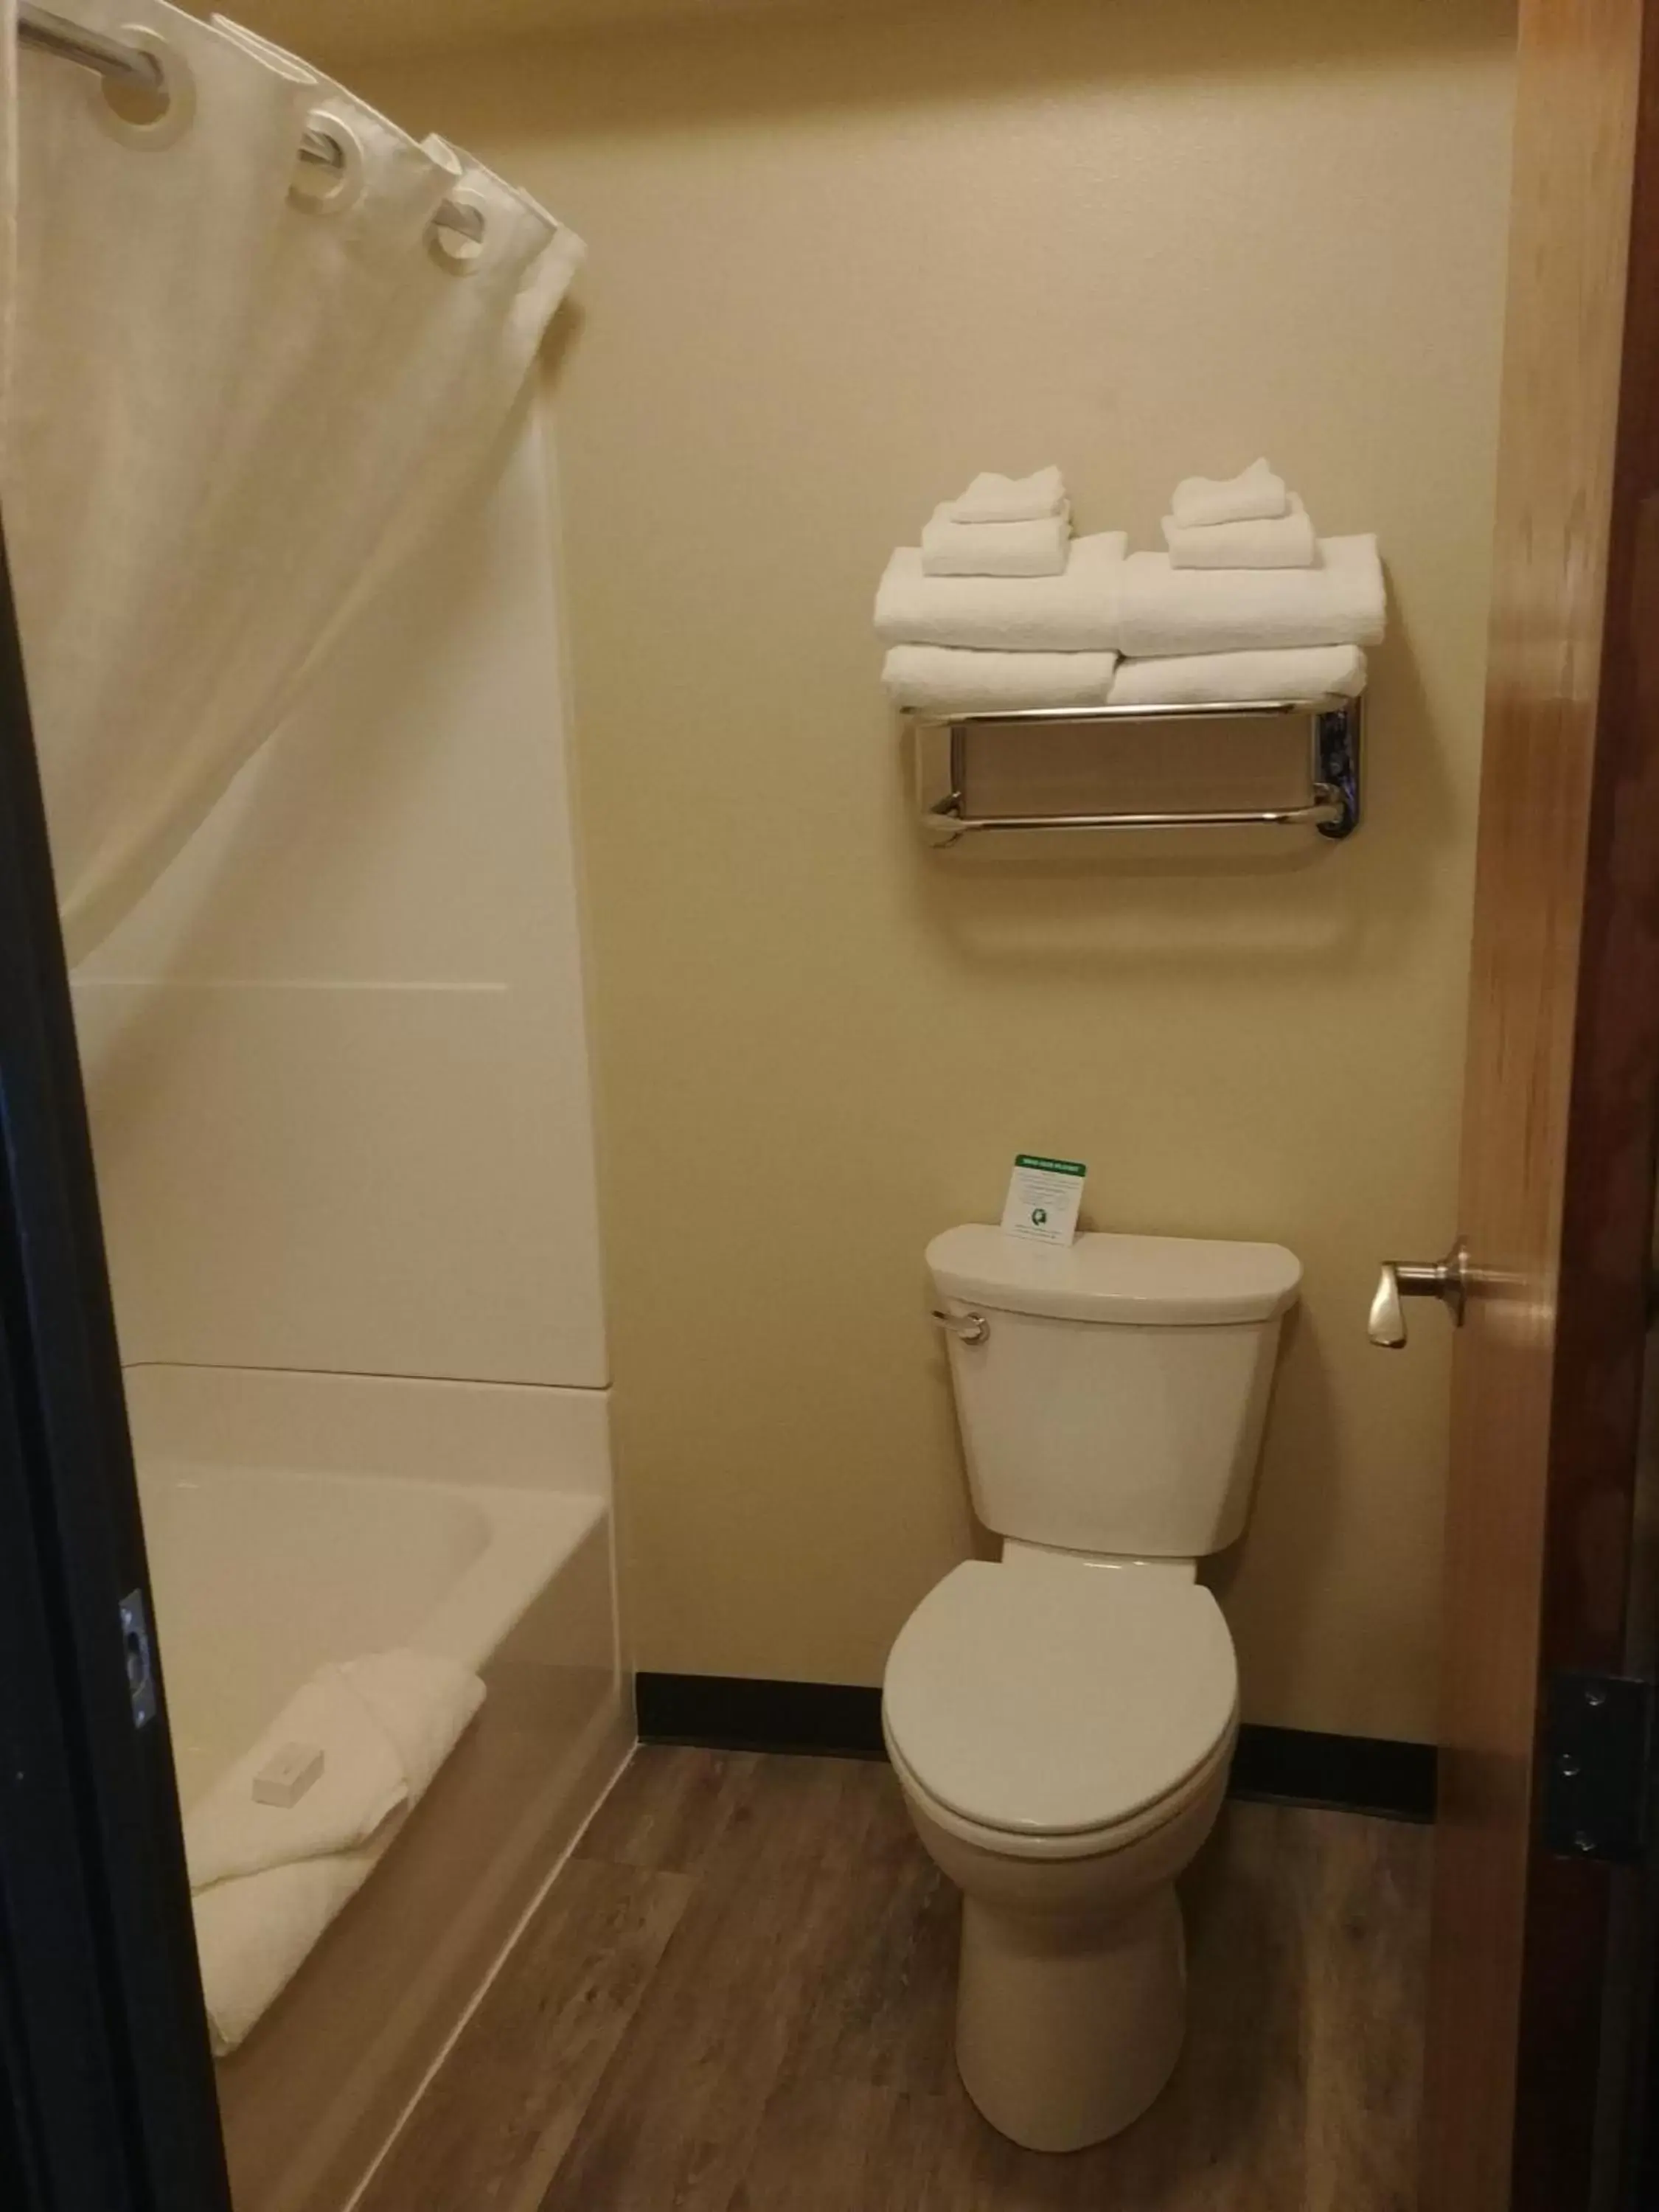 Toilet, Bathroom in Boarders Inn & Suites by Cobblestone Hotels - Broken Bow